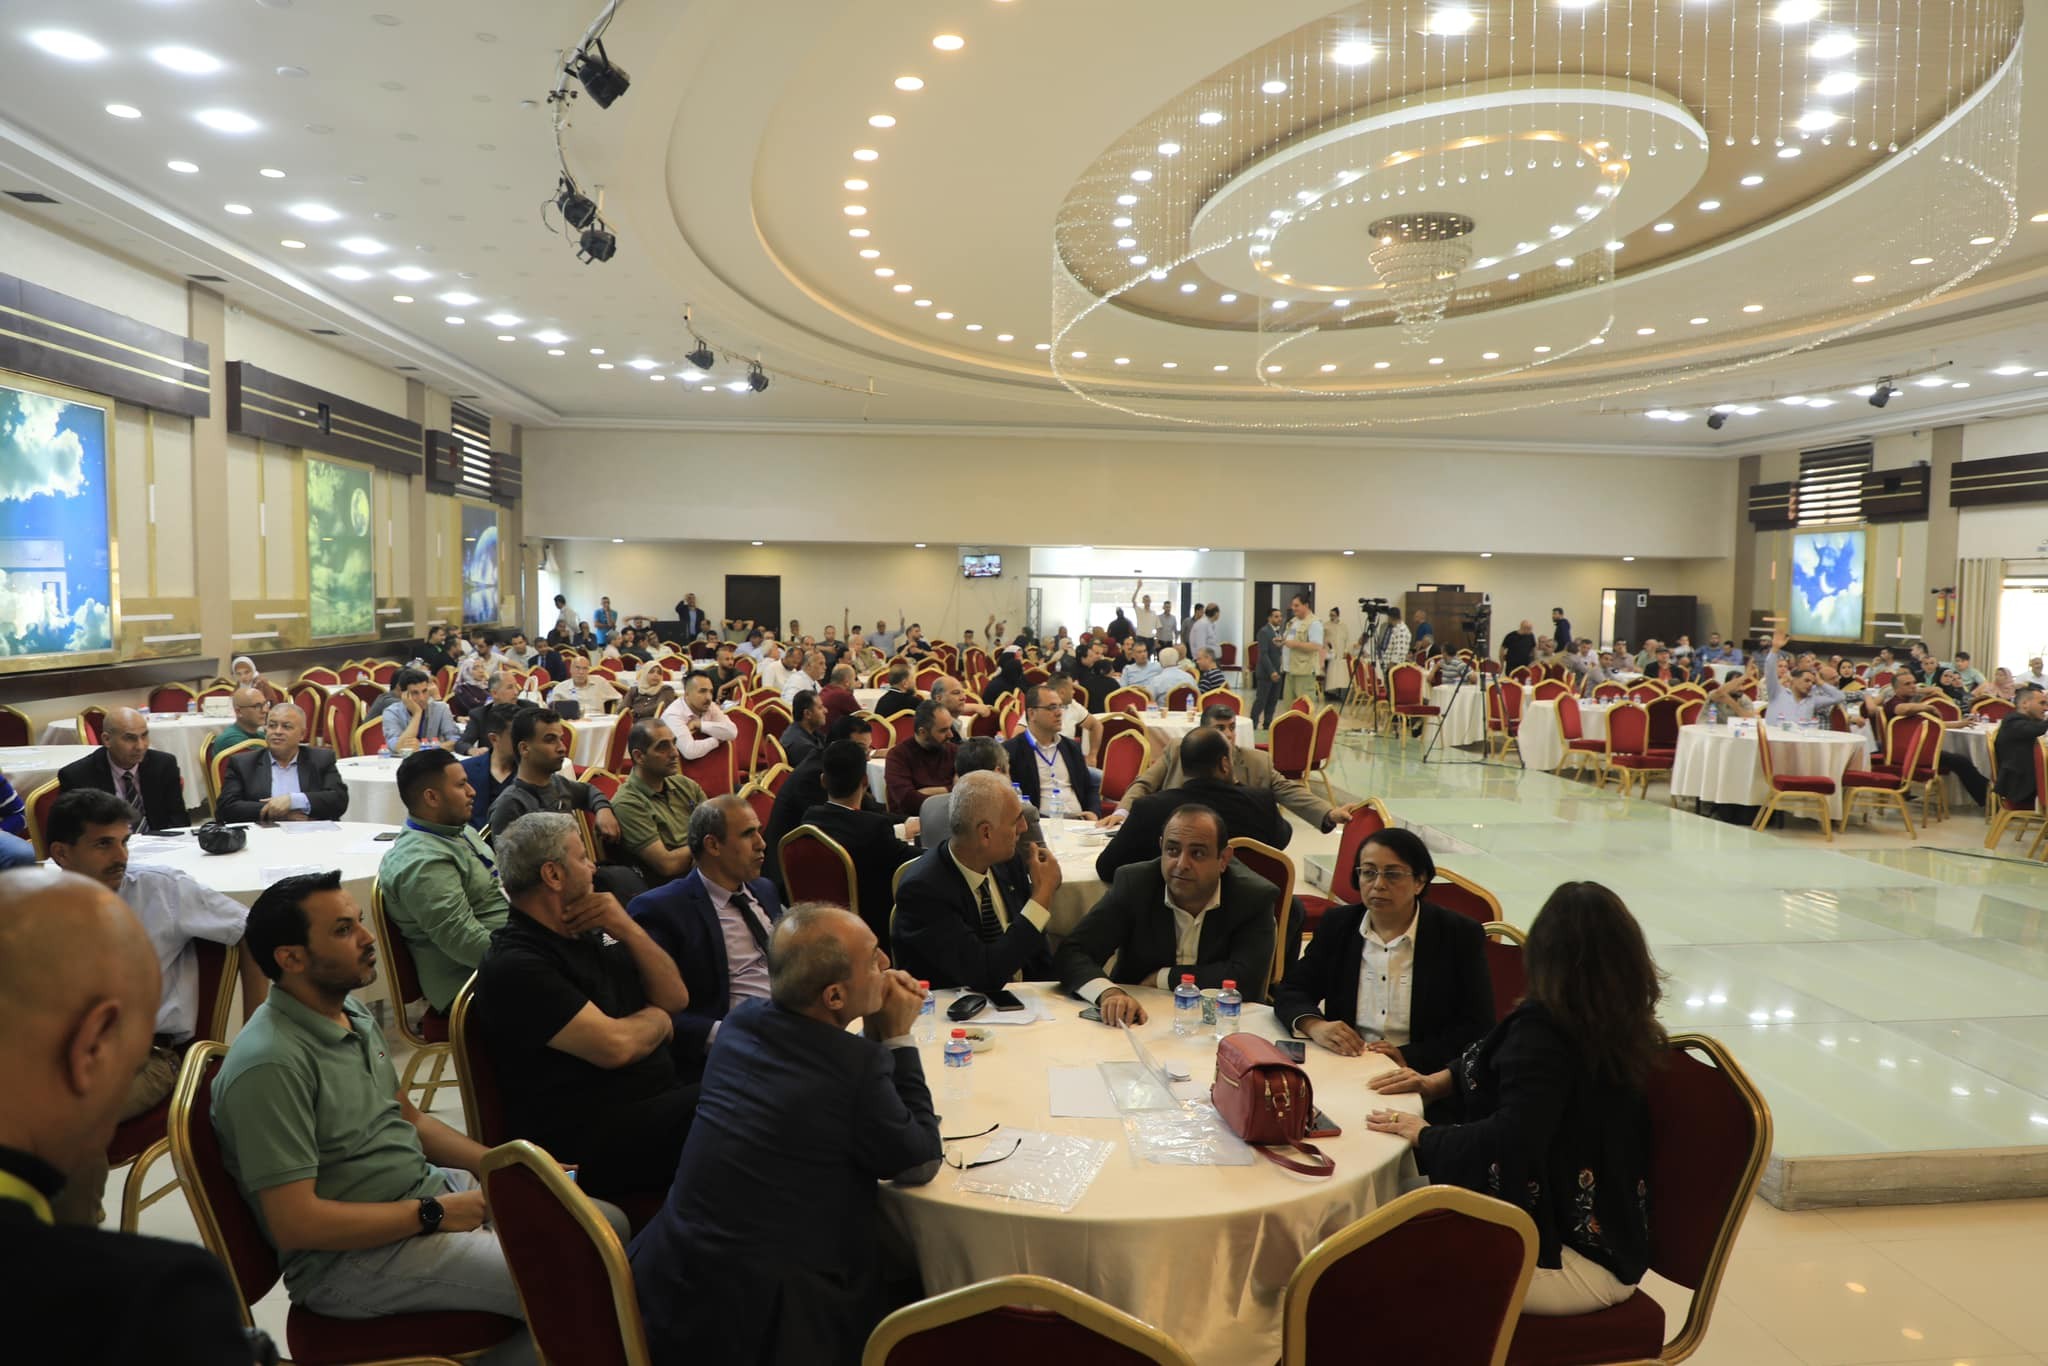 نقابة الصحفيين الفلسطينيين تختتم بنجاح مؤتمرها العام وتعتمد قرارات مهمة 8.jpg